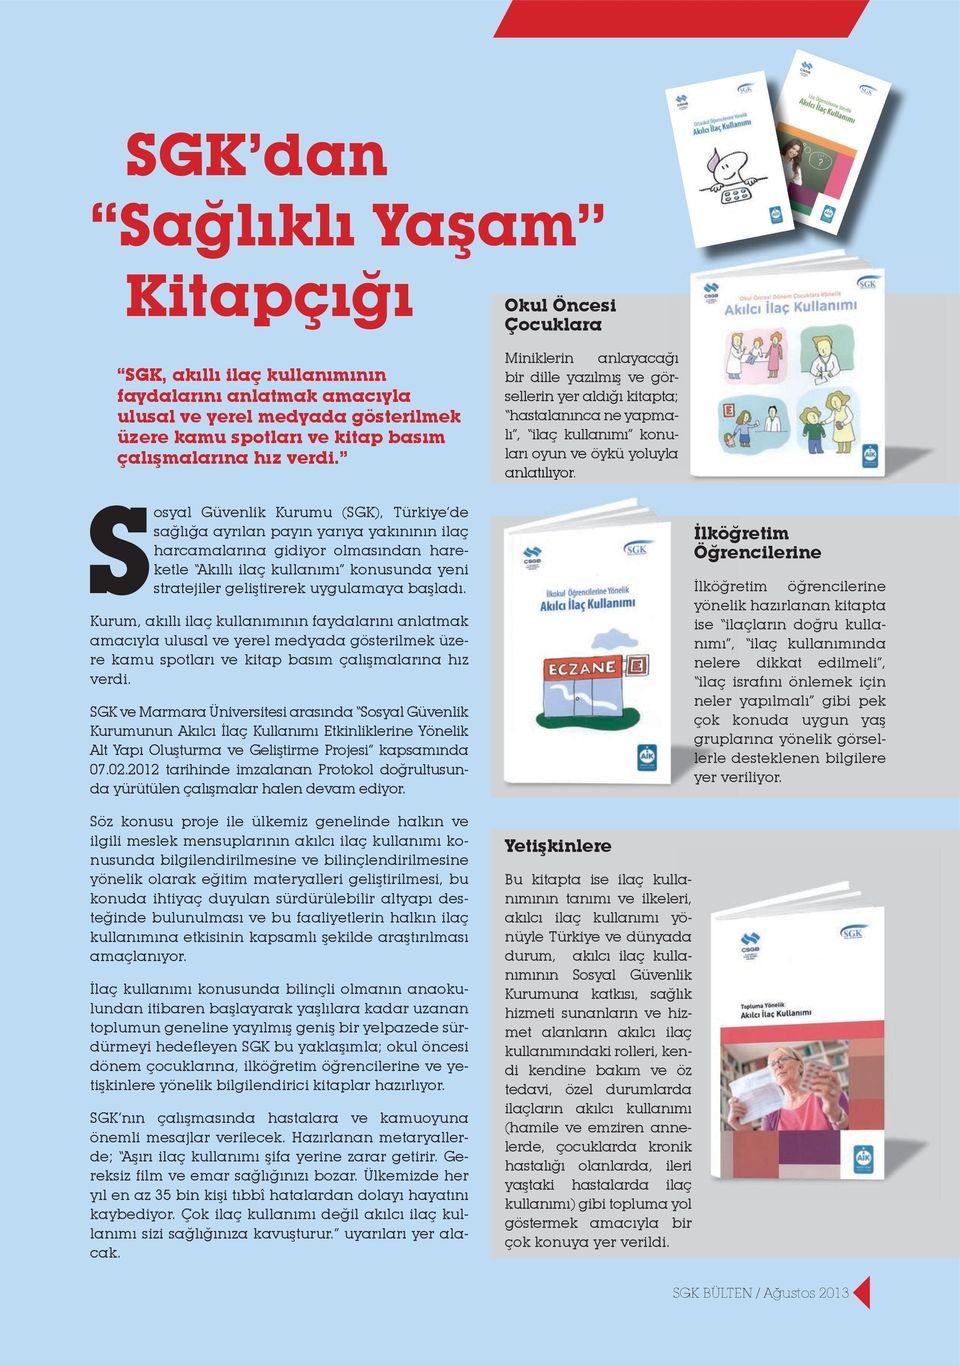 Sosyal Güvenlik Kurumu (SGK), Türkiye de sağlığa ayrılan payın yarıya yakınının ilaç harcamalarına gidiyor olmasından hareketle Akıllı ilaç kullanımı konusunda yeni stratejiler geliştirerek